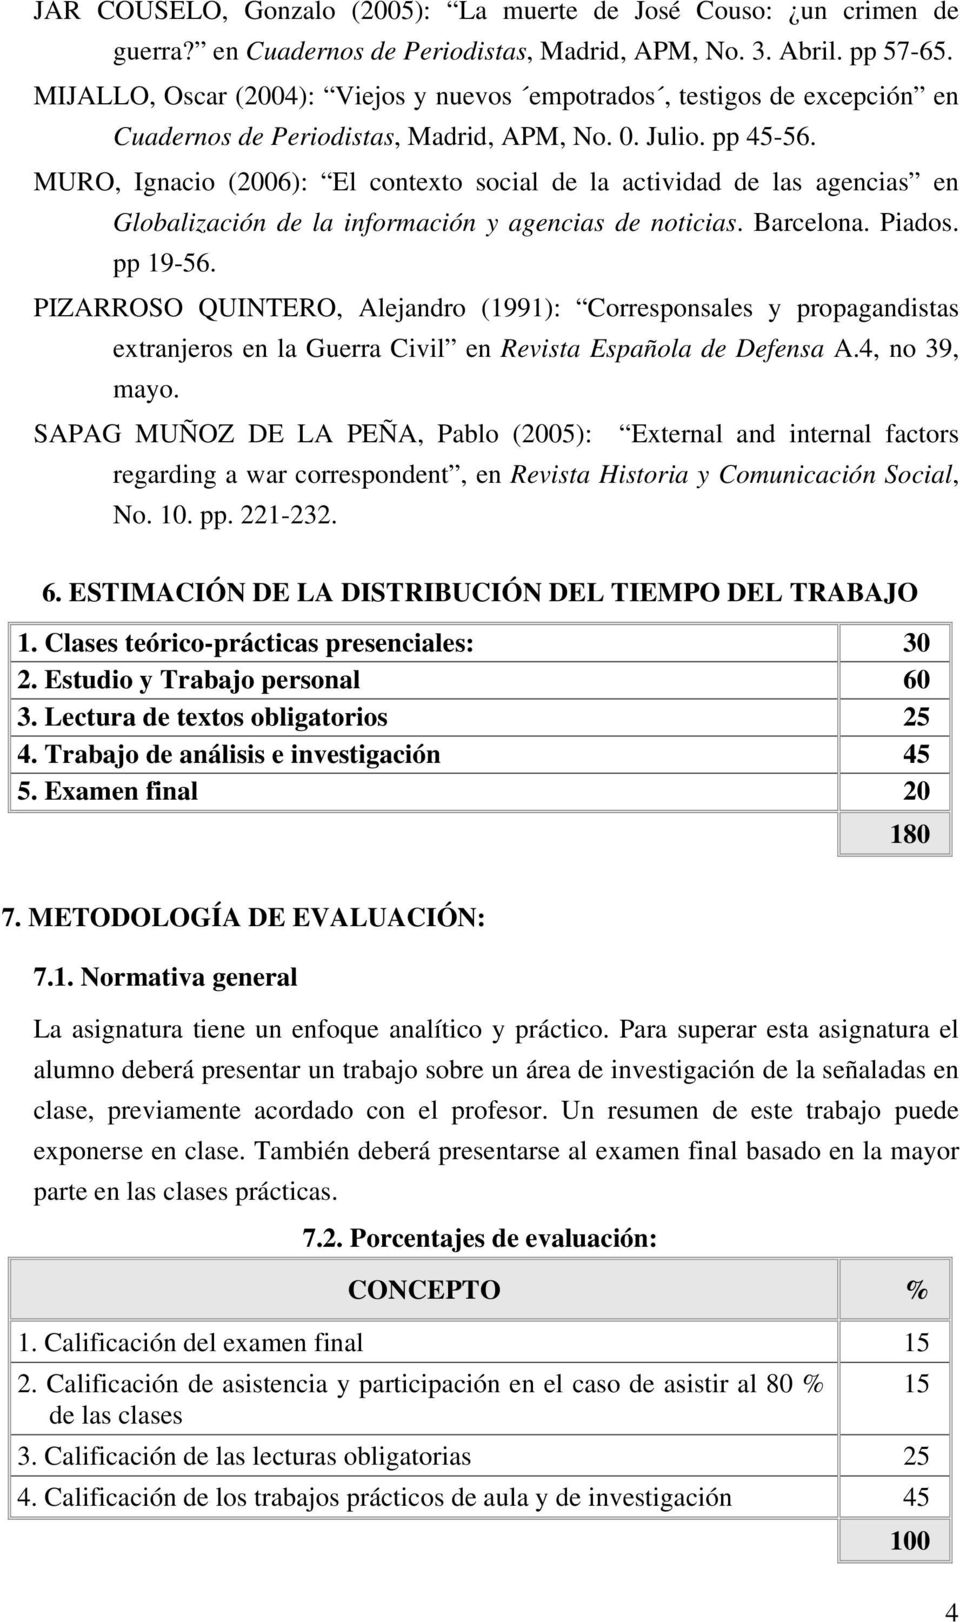 MURO, Ignacio (2006): El contexto social de la actividad de las agencias en Globalización de la información y agencias de noticias. Barcelona. Piados. pp 19-56.